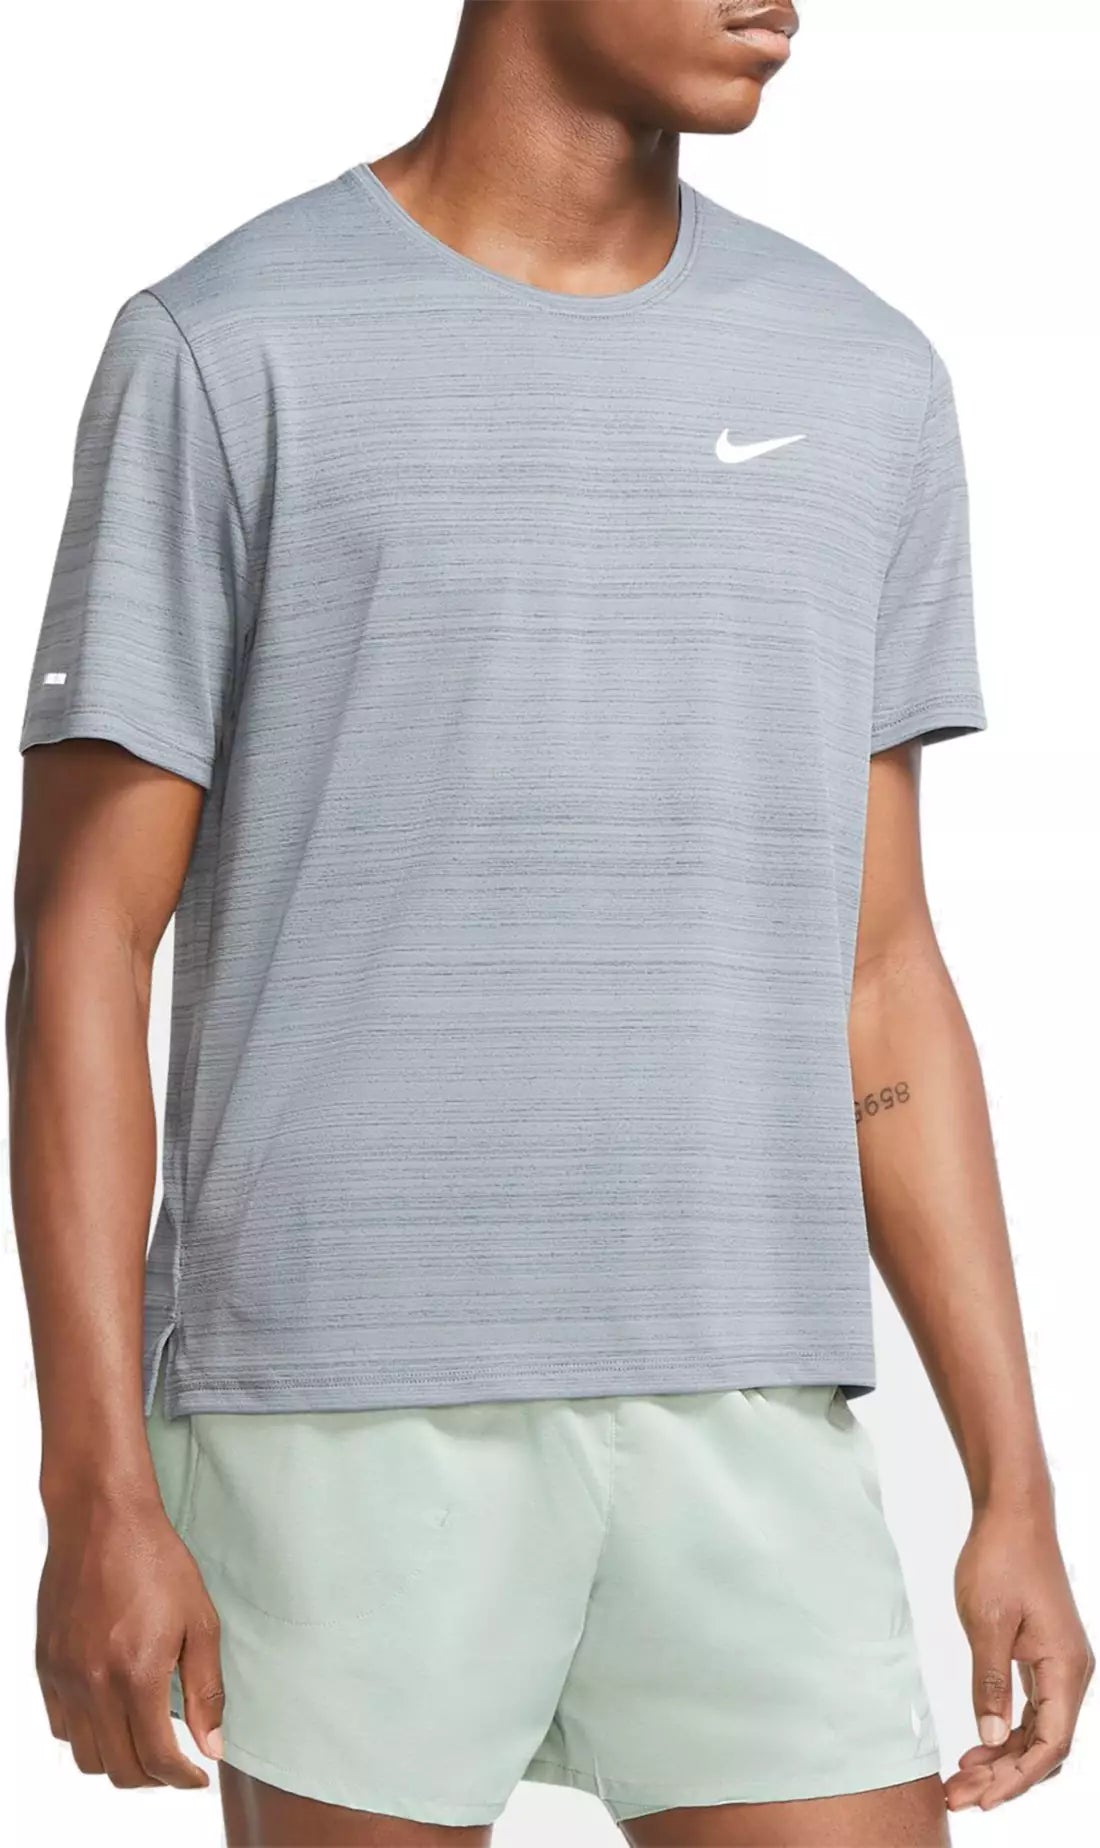 Men's Nike Dri-Fit Miler Short Sleeve Top